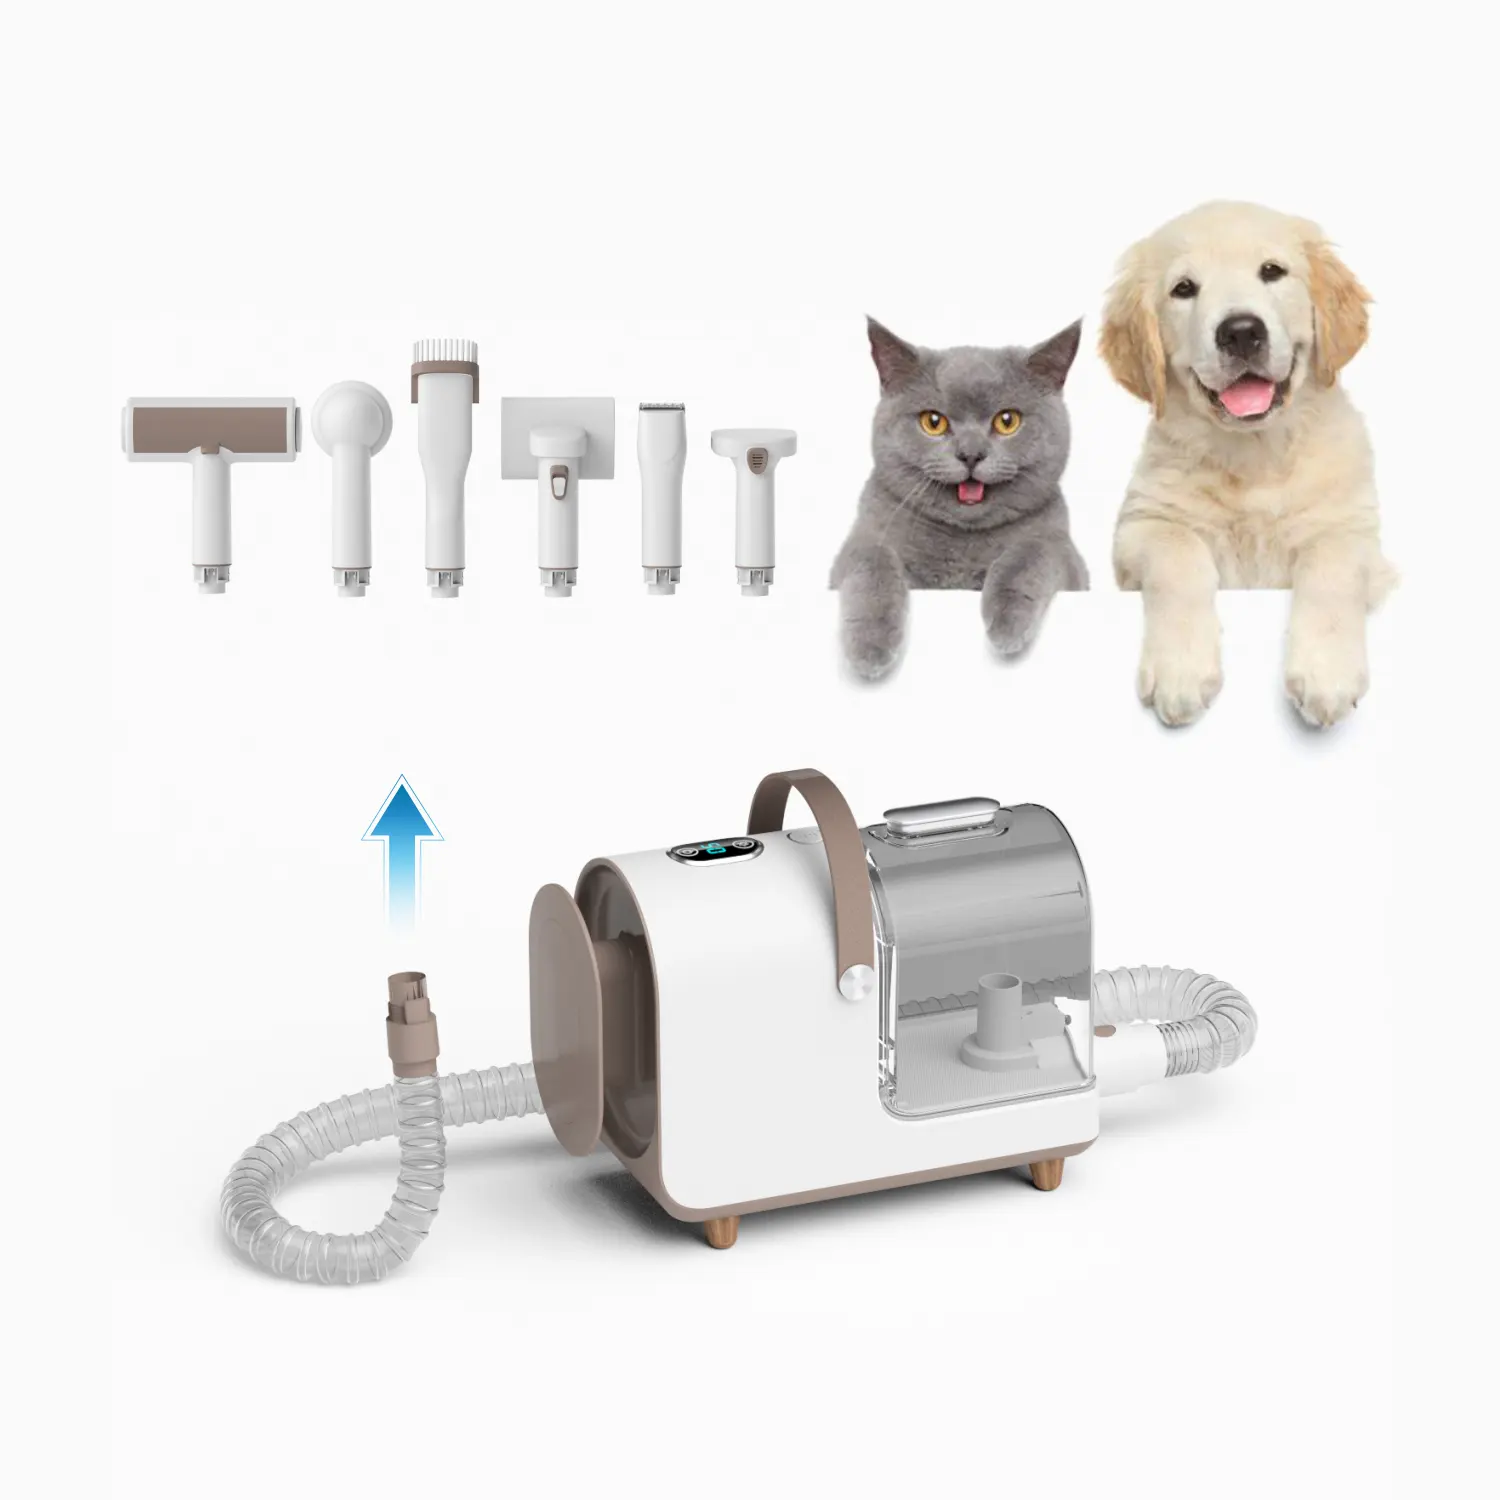 Новый дизайн, электрическая машинка для стрижки домашних животных, вакуумная машинка для стрижки собак, вакуумная машинка для стрижки домашних животных, комплект для ухода за домашними животными